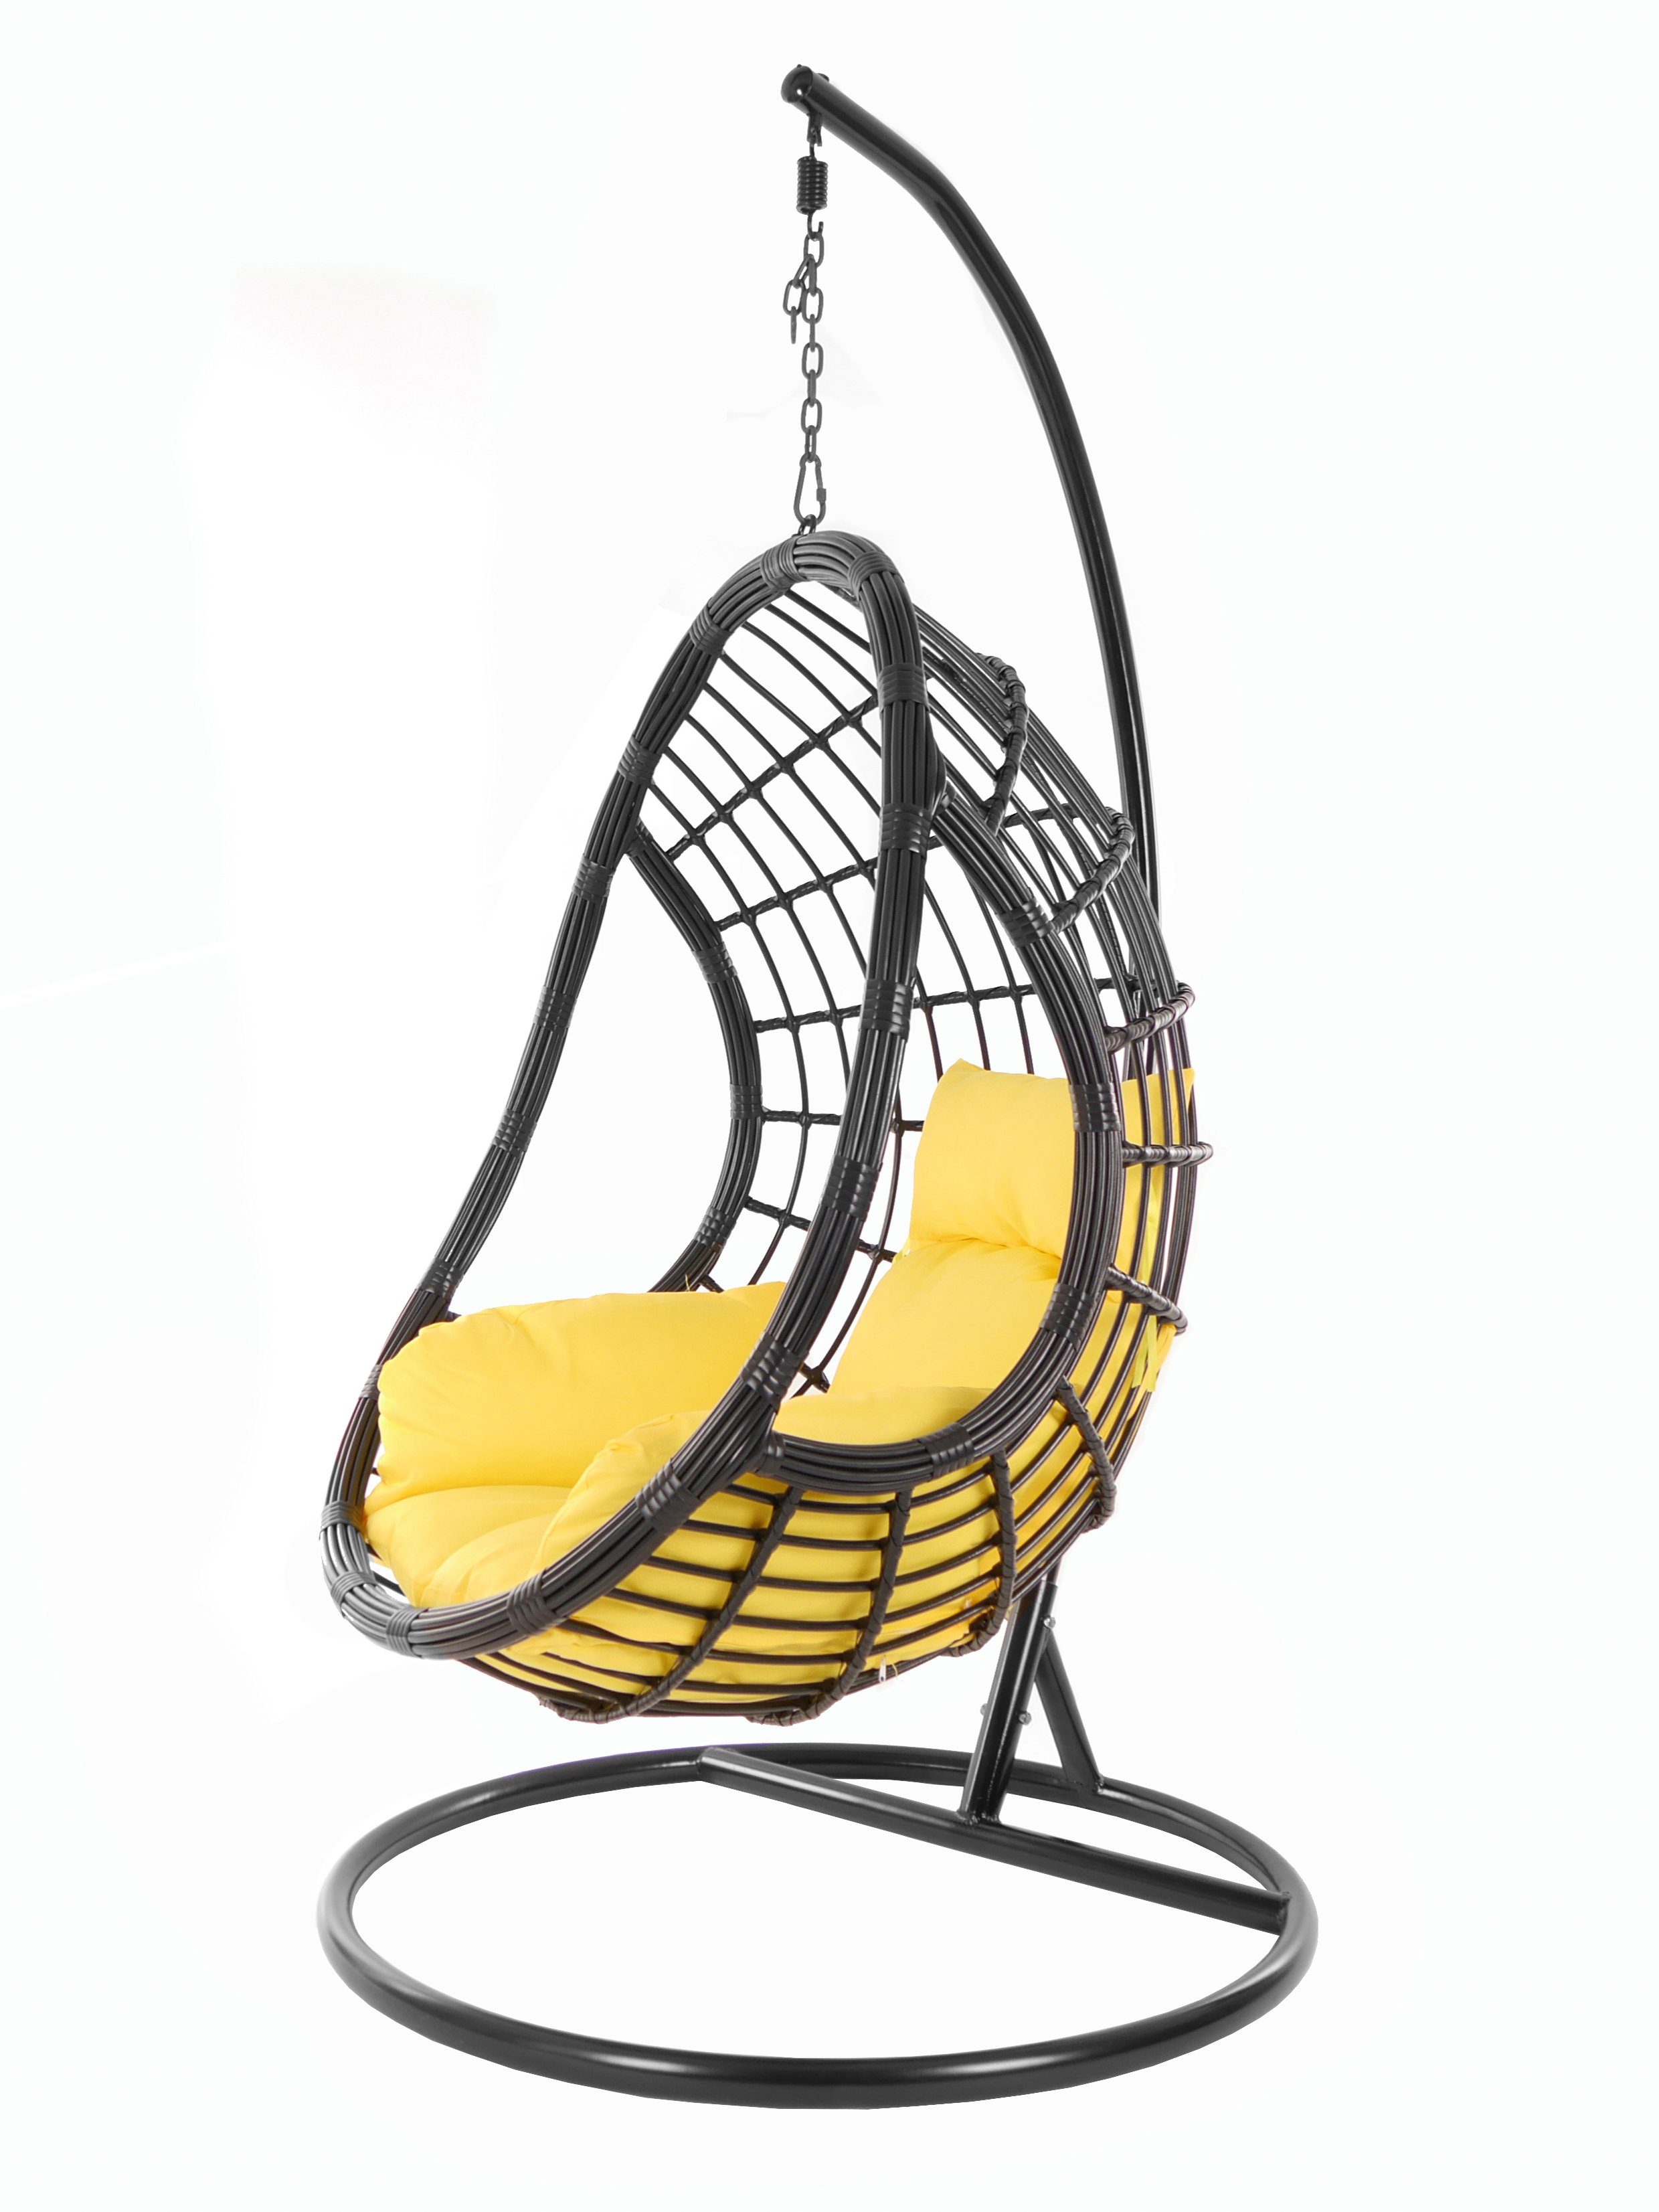 KIDEO Hängesessel PALMANOVA black, Schwebesessel, Swing Chair, Hängesessel mit Gestell und Kissen, Nest-Kissen gelb (2200 pineapple) | Hängesessel